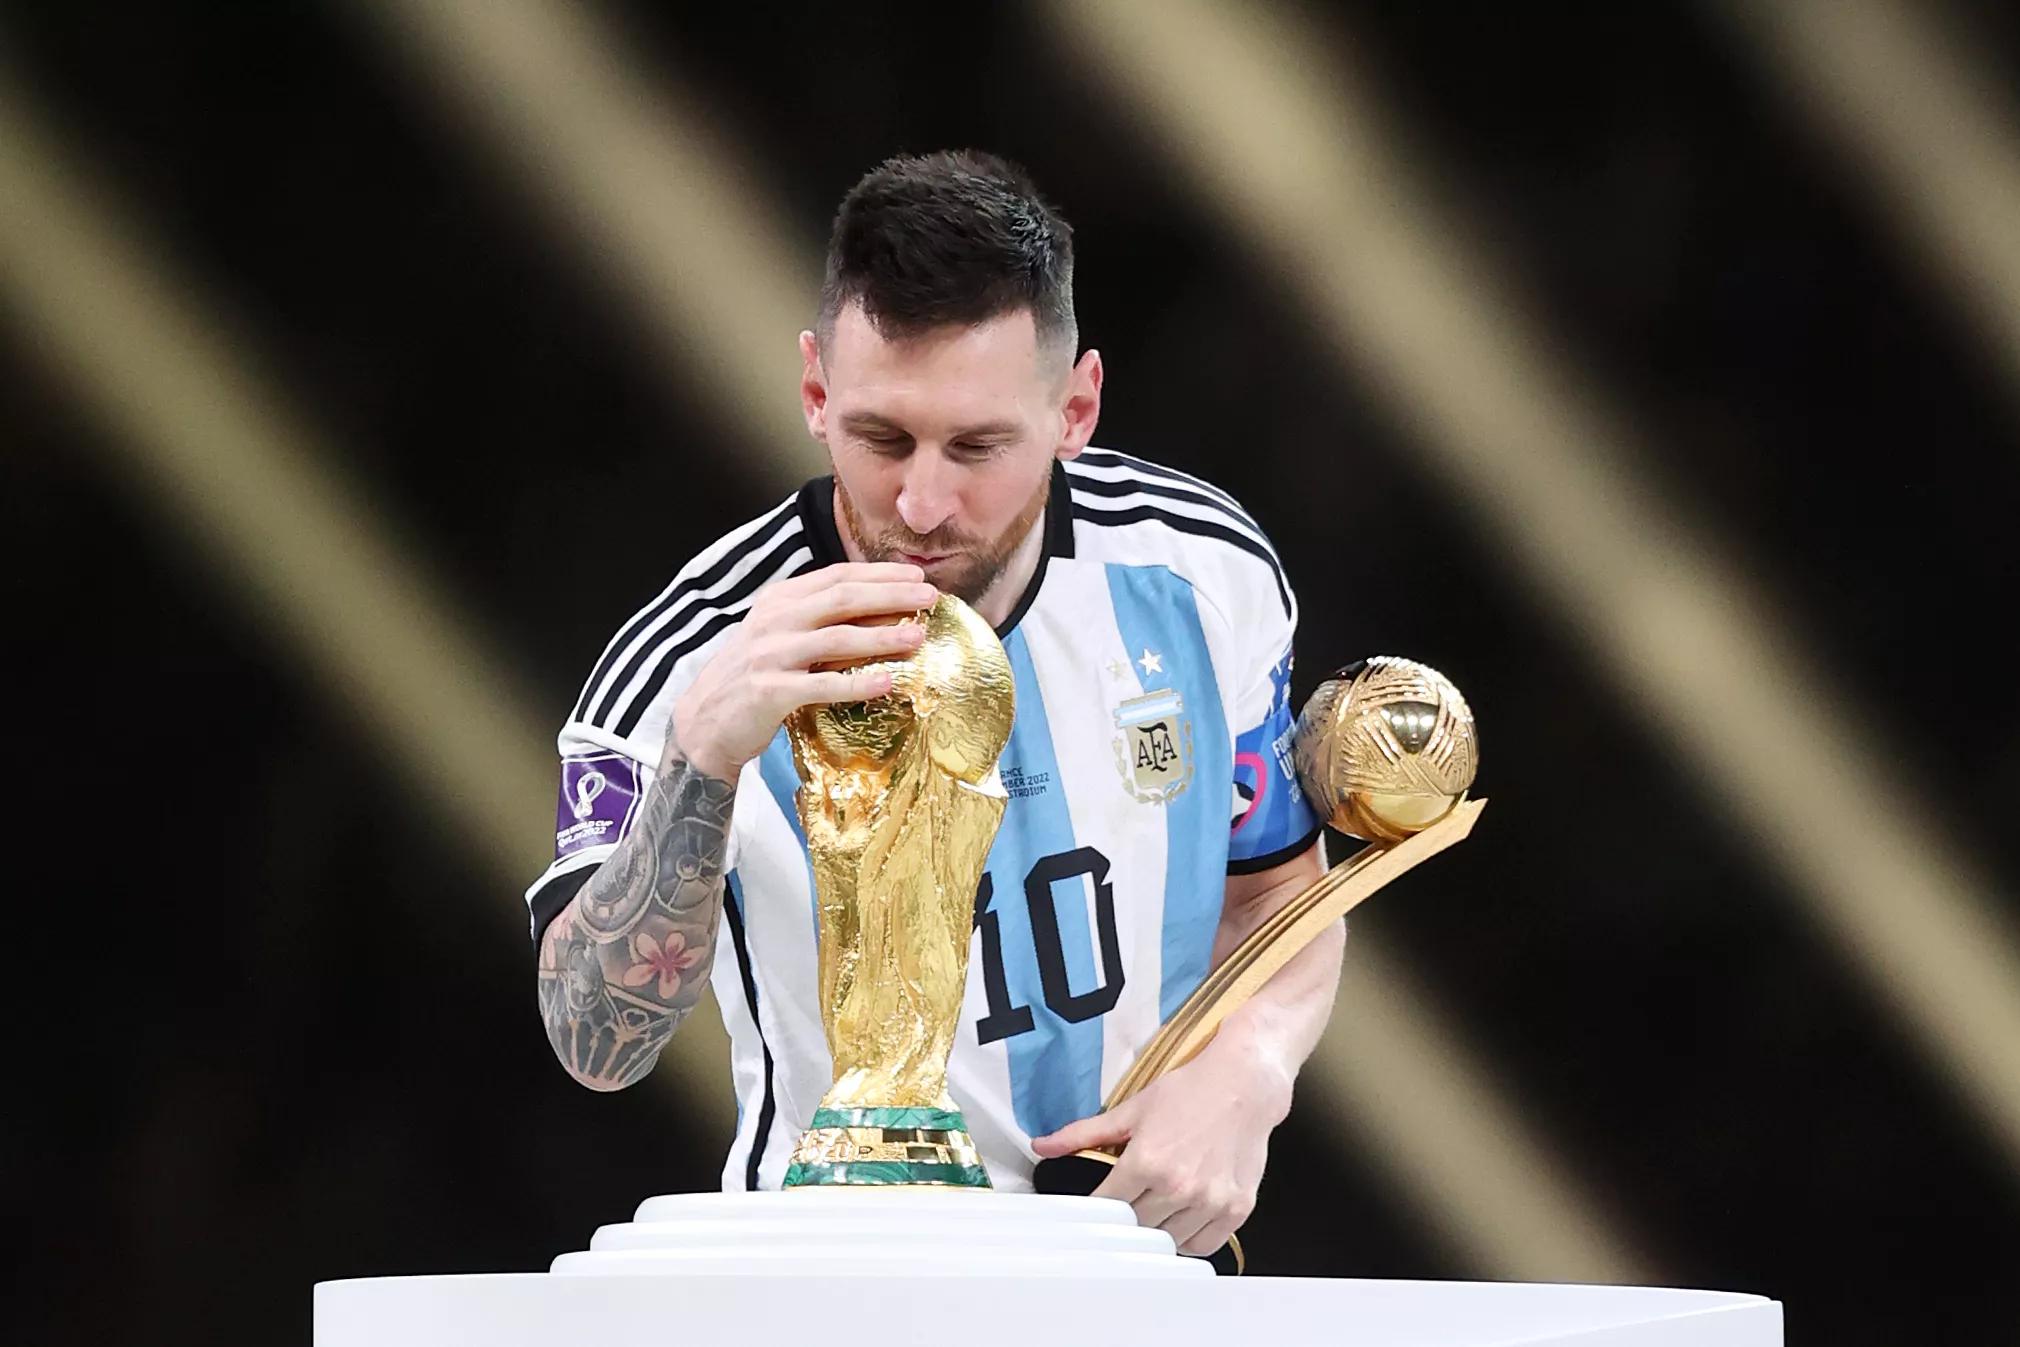 Sự kiện thể thao lớn nhất thế giới - World Cup - luôn thu hút sự tò mò của khán giả toàn cầu. Hãy cùng xem hình ảnh khi một fan thần tượng dự đoán chính xác ngày mà Messi sẽ giành chiến thắng World Cup. Bạn có tin vào tài năng đặc biệt của Messi không?